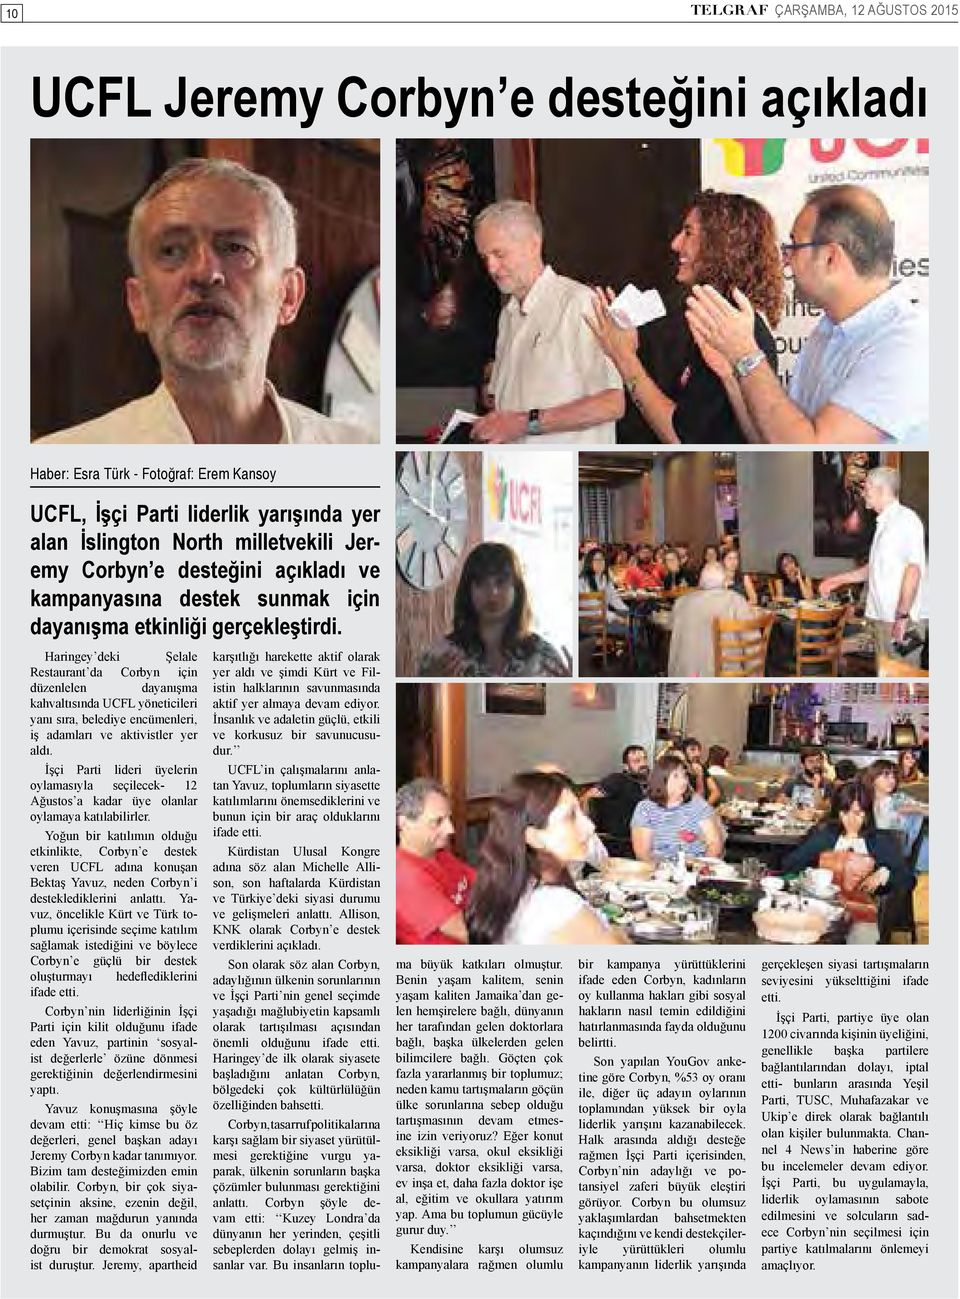 Haringey deki Şelale Restaurant da Corbyn için düzenlelen dayanışma kahvaltısında UCFL yöneticileri yanı sıra, belediye encümenleri, iş adamları ve aktivistler yer aldı.